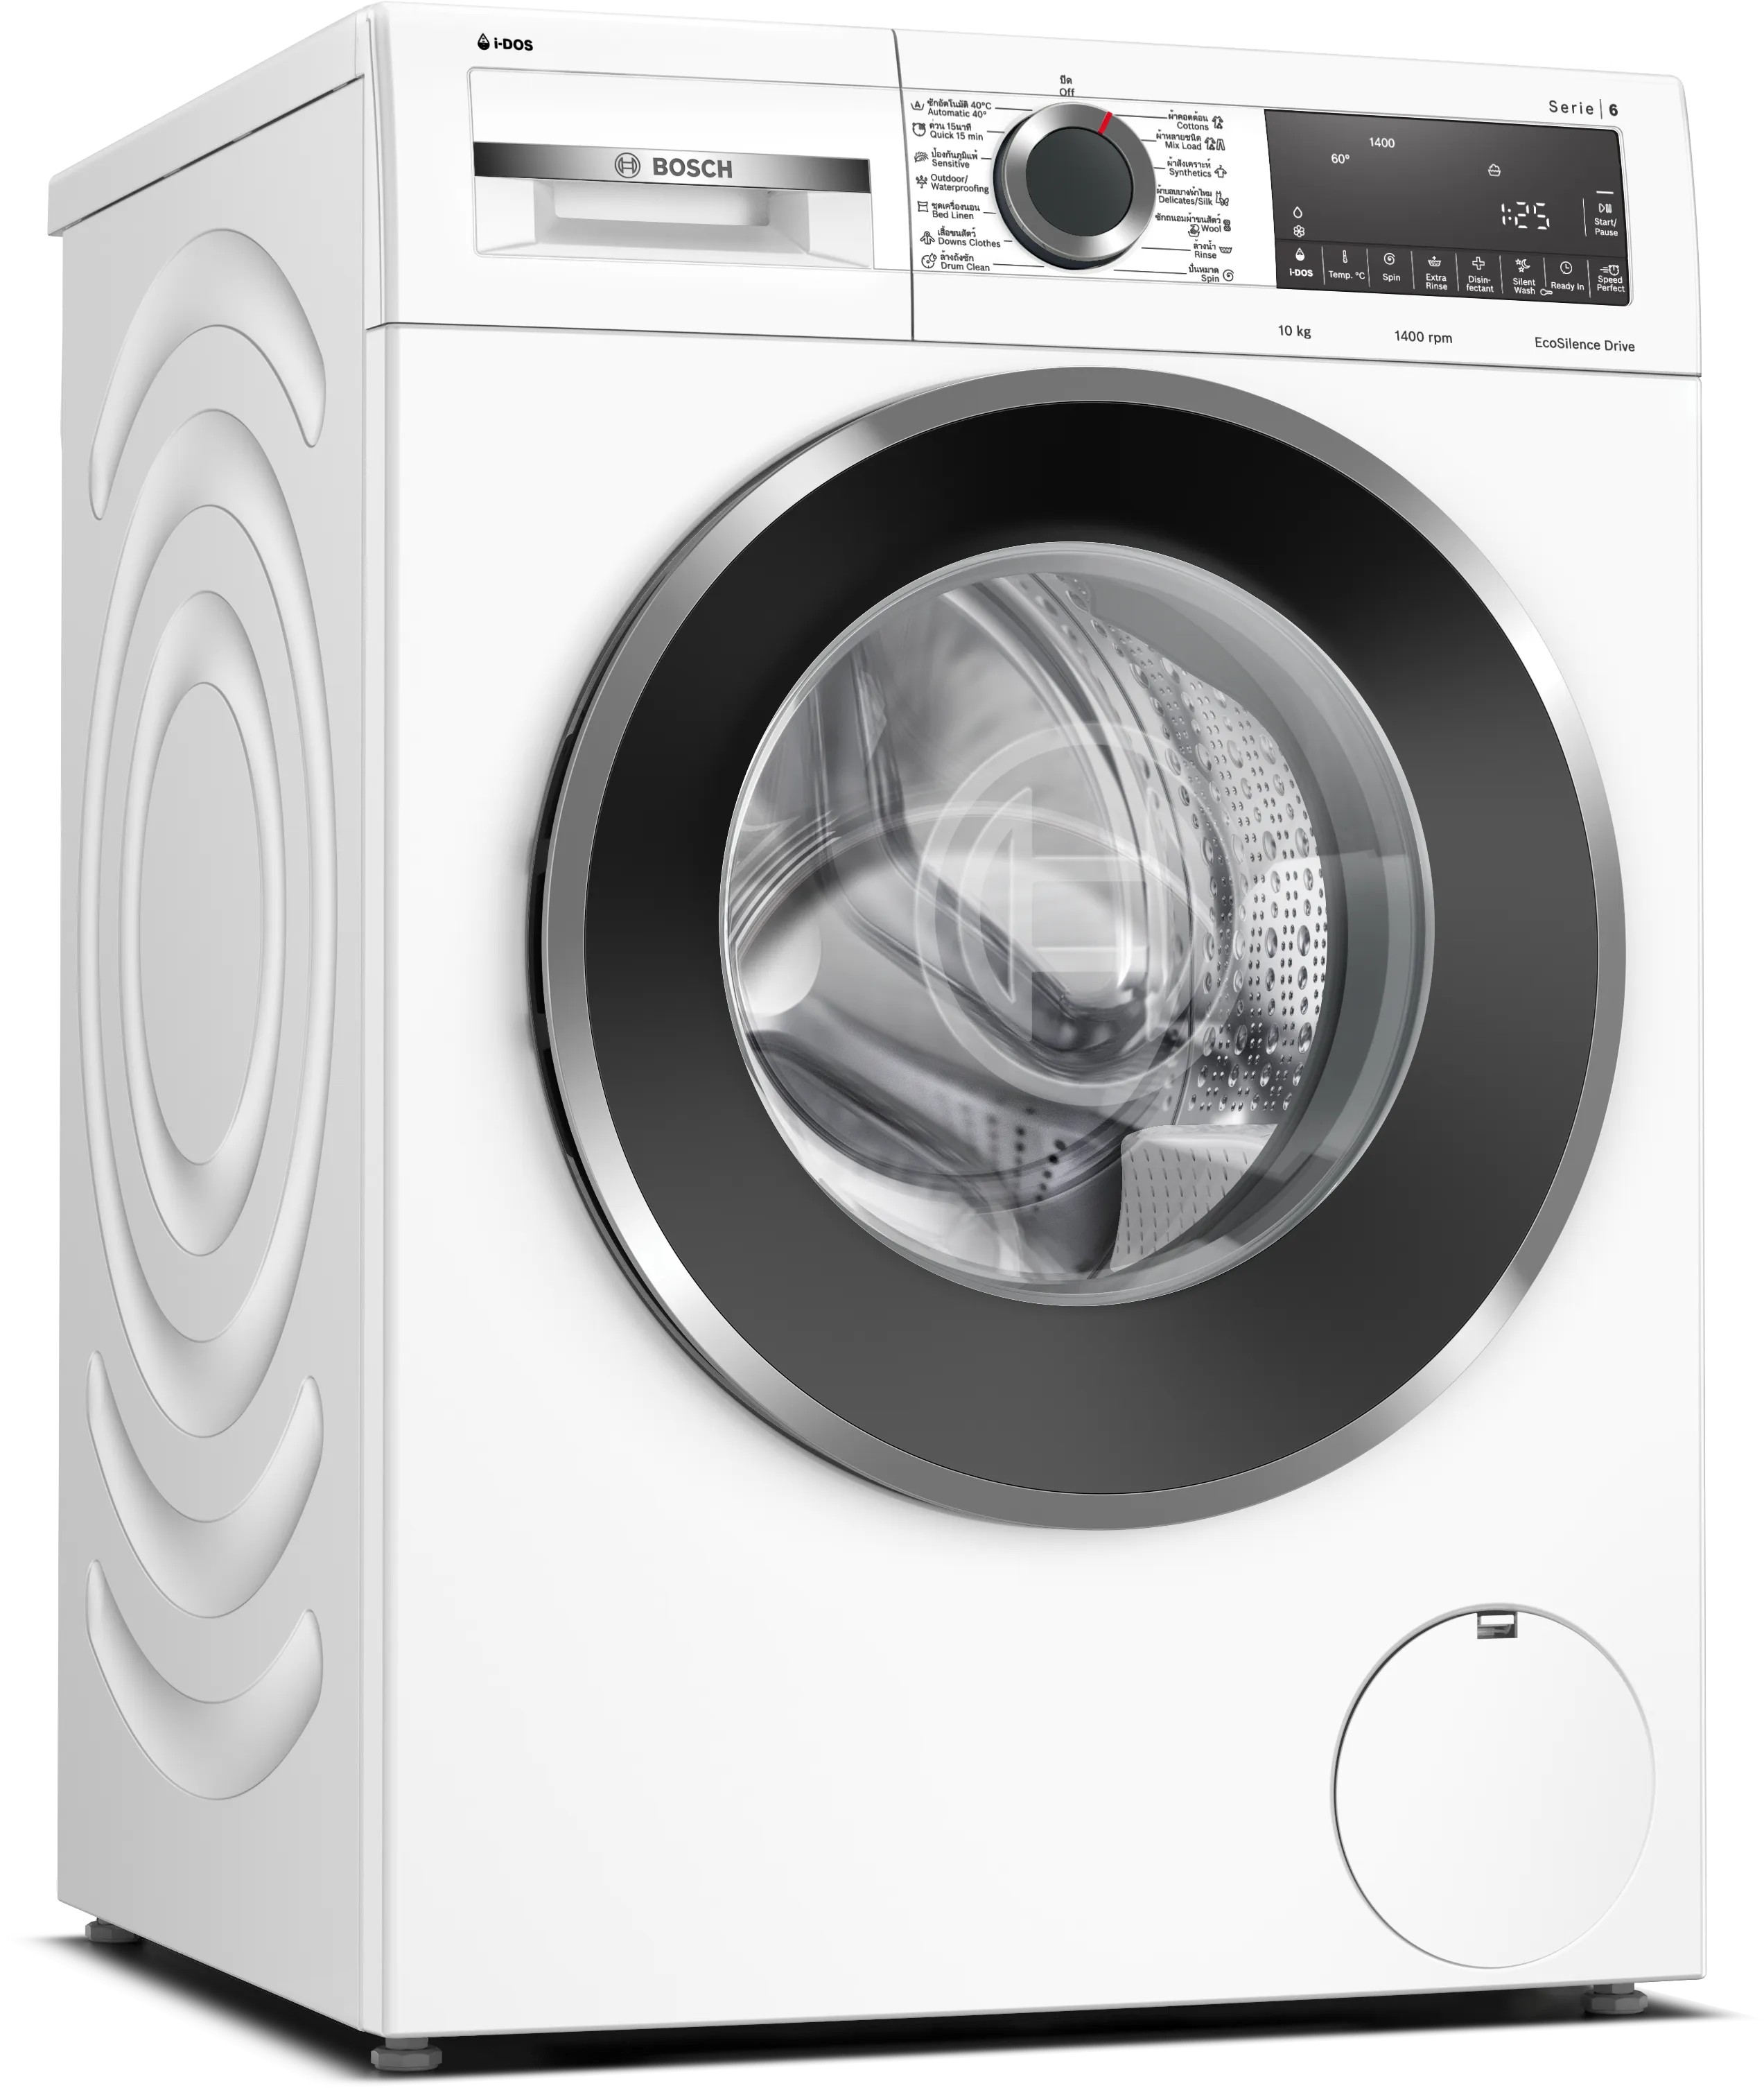 Series 6 washing machine, front loader 10 kg 1400 rpm 